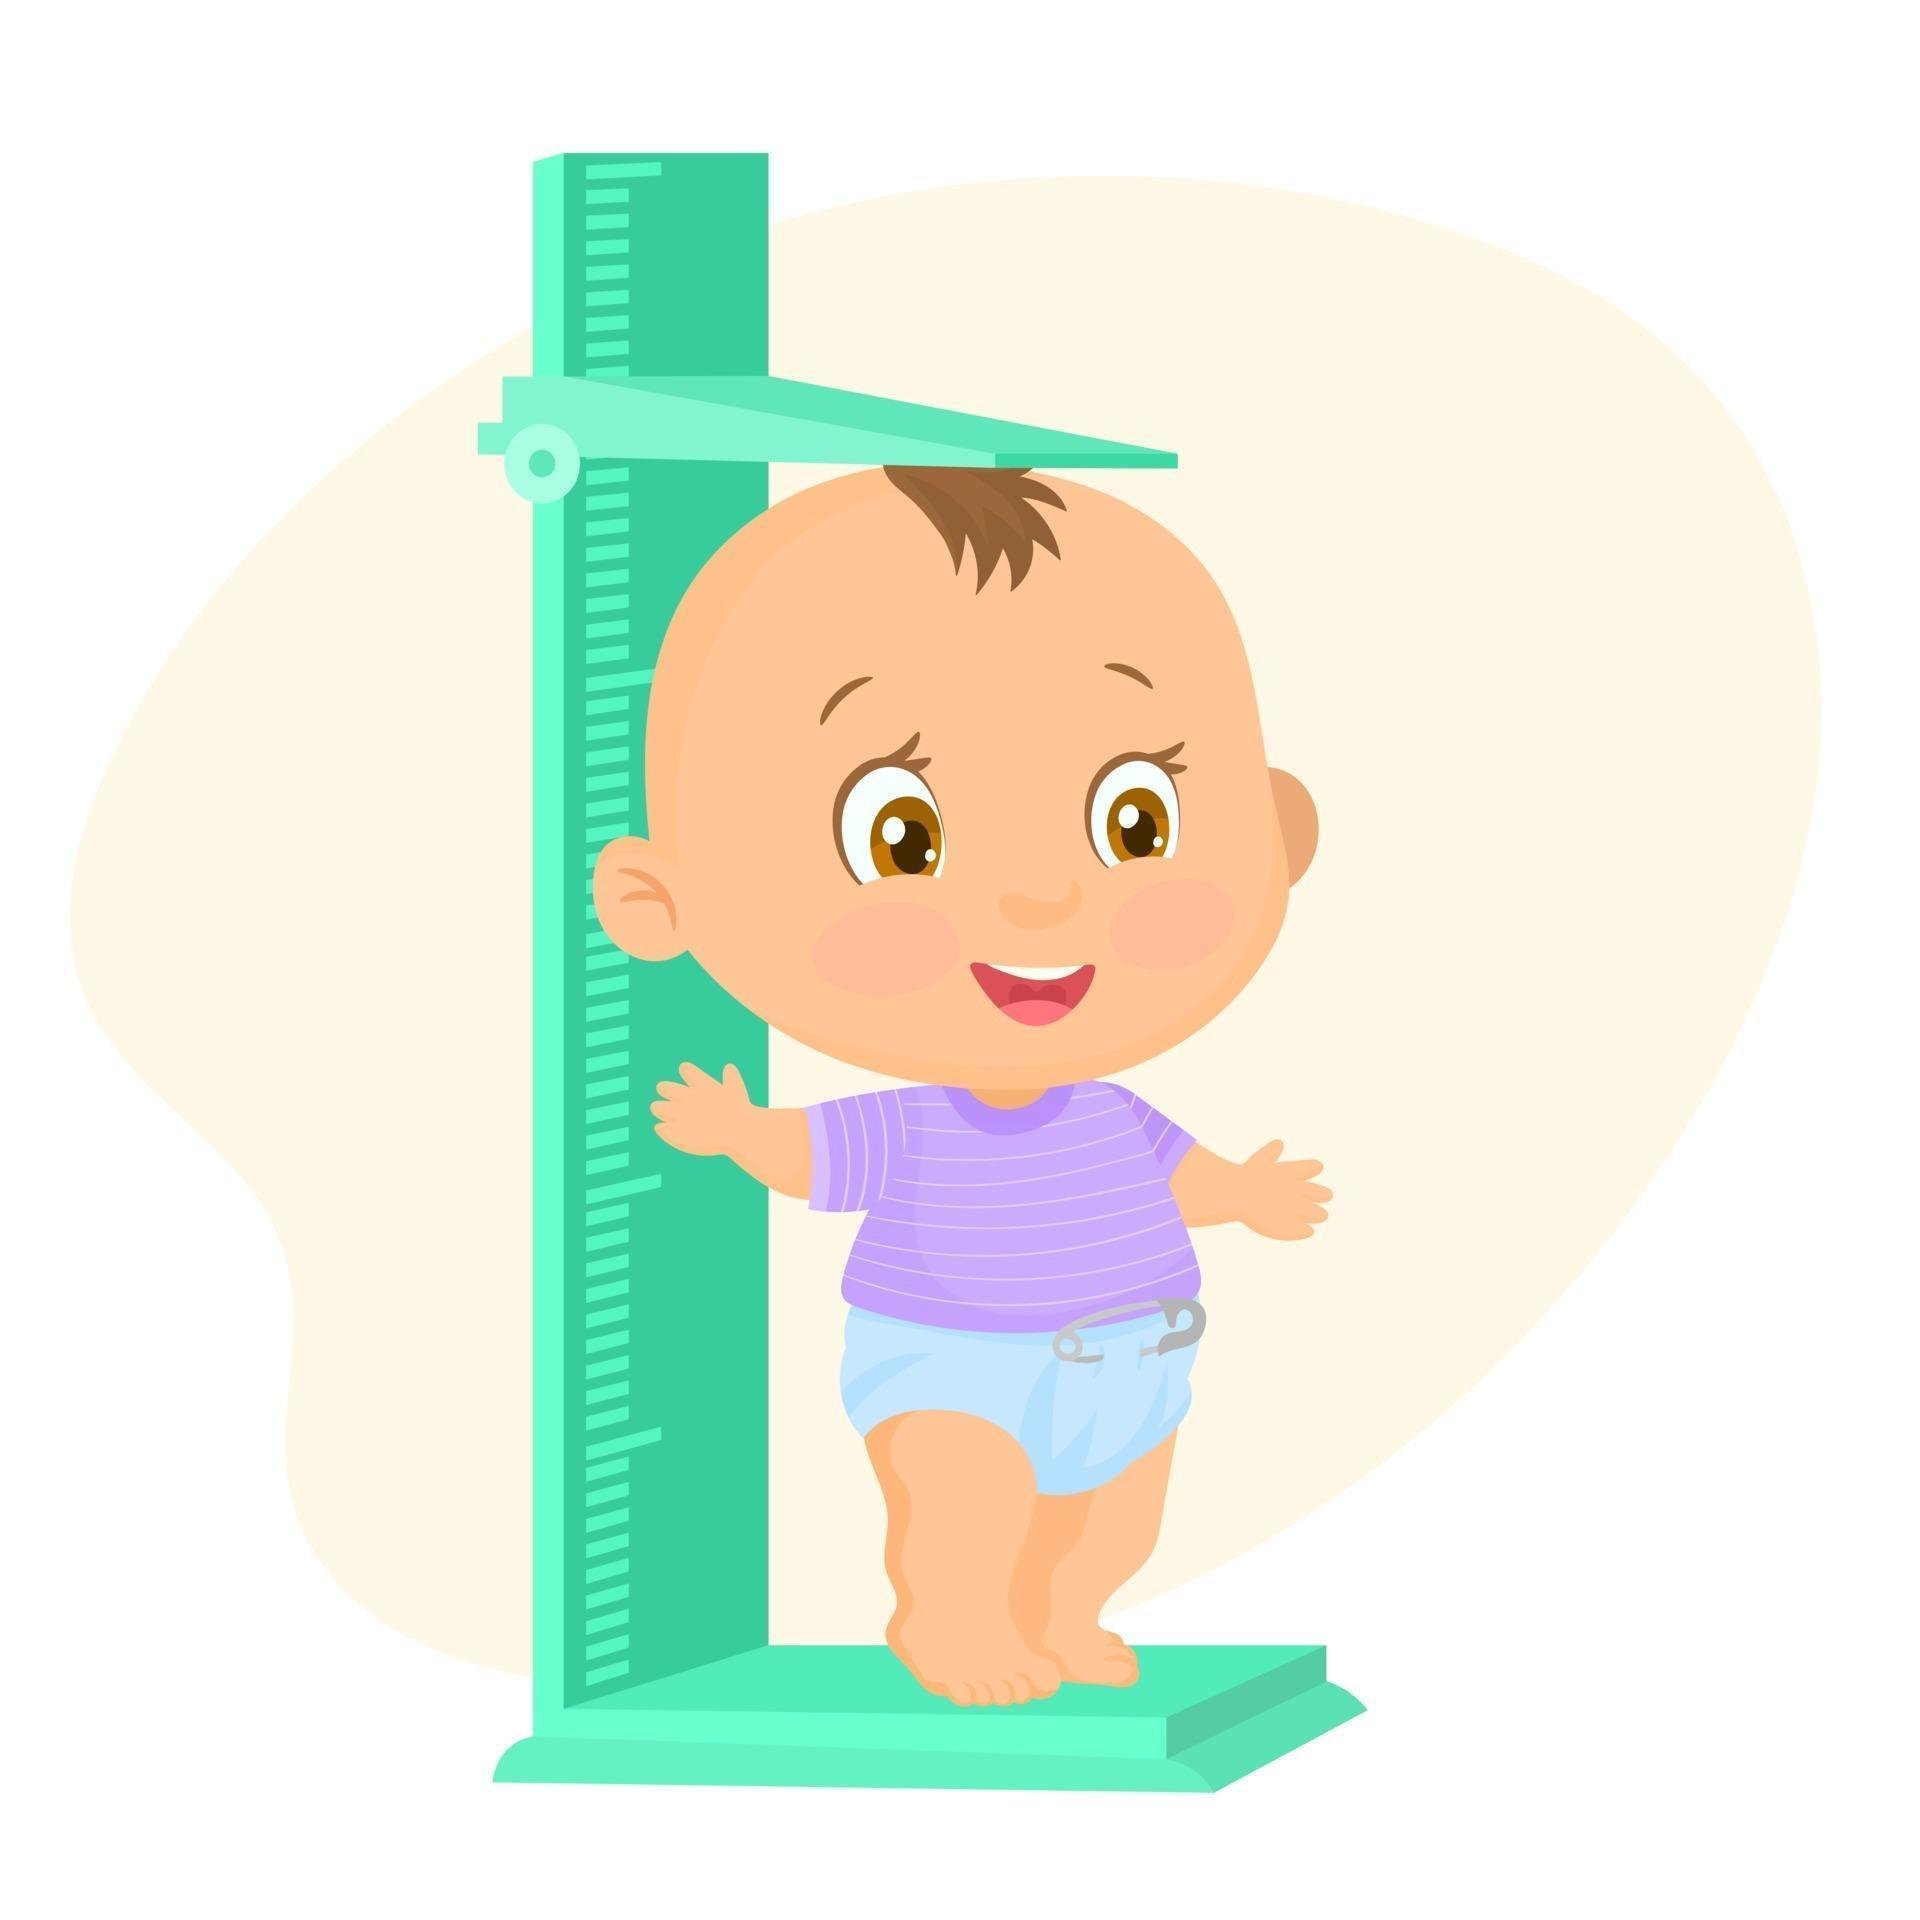 Измерение роста ребенка. Измеритель роста для детей. Антропометрия детей. Антропометрия детей в саду. Изменения роста ребенка